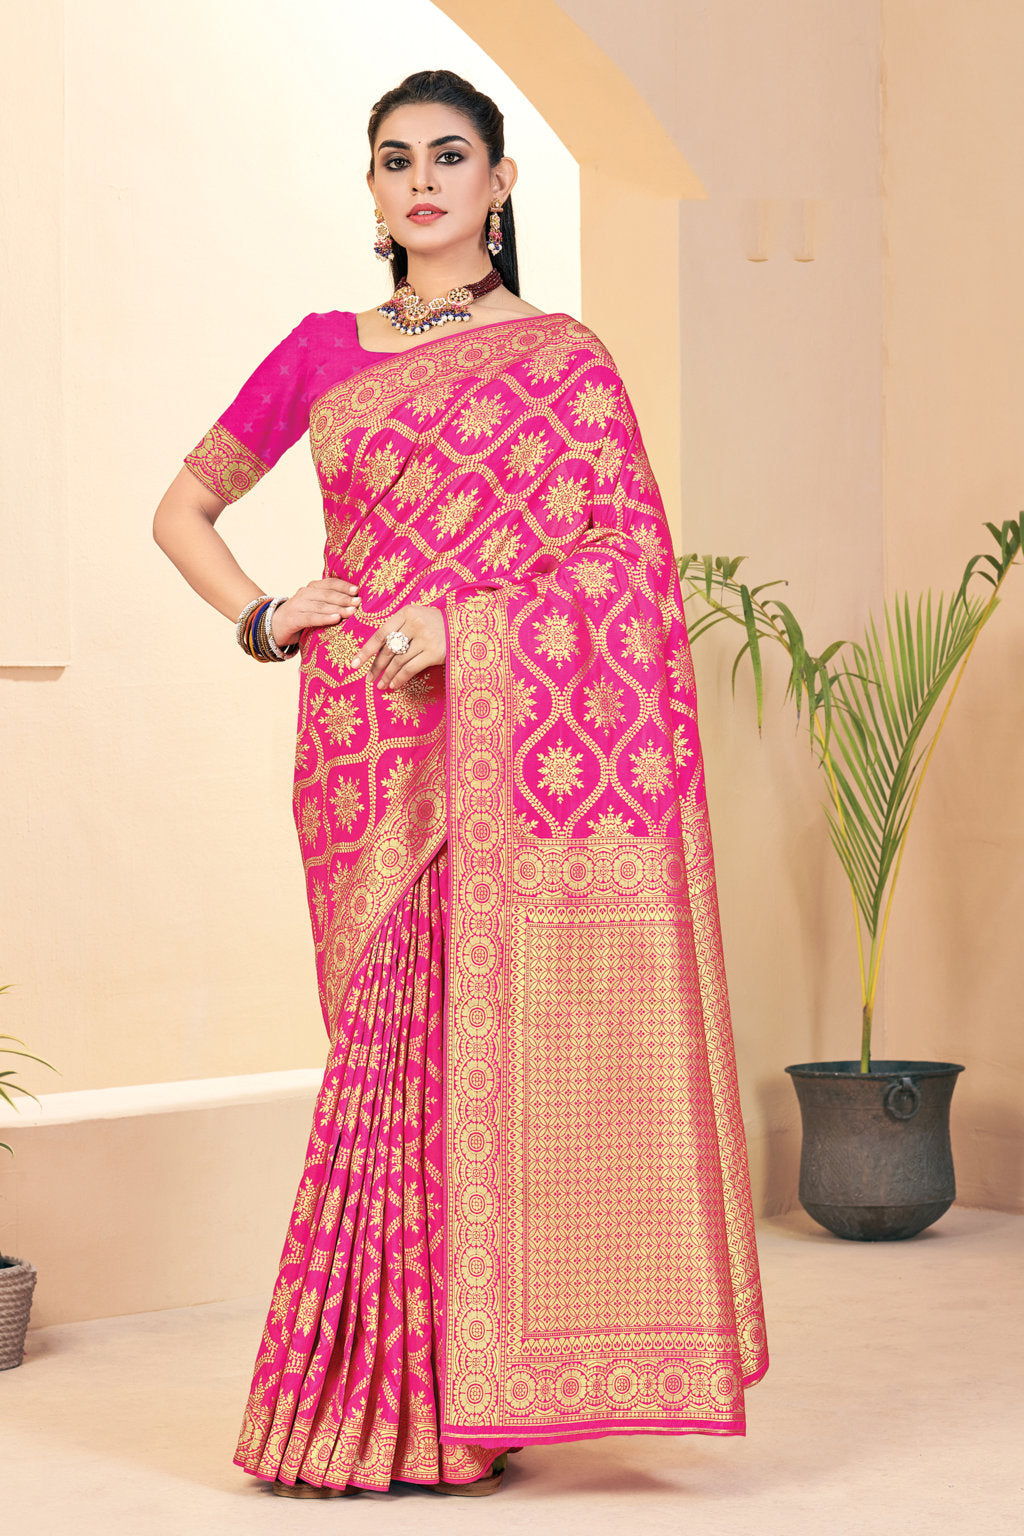 Women's Sangam Prints Pink Banarasi Silk Woven Zari Work Traditional saree - Sangam Prints